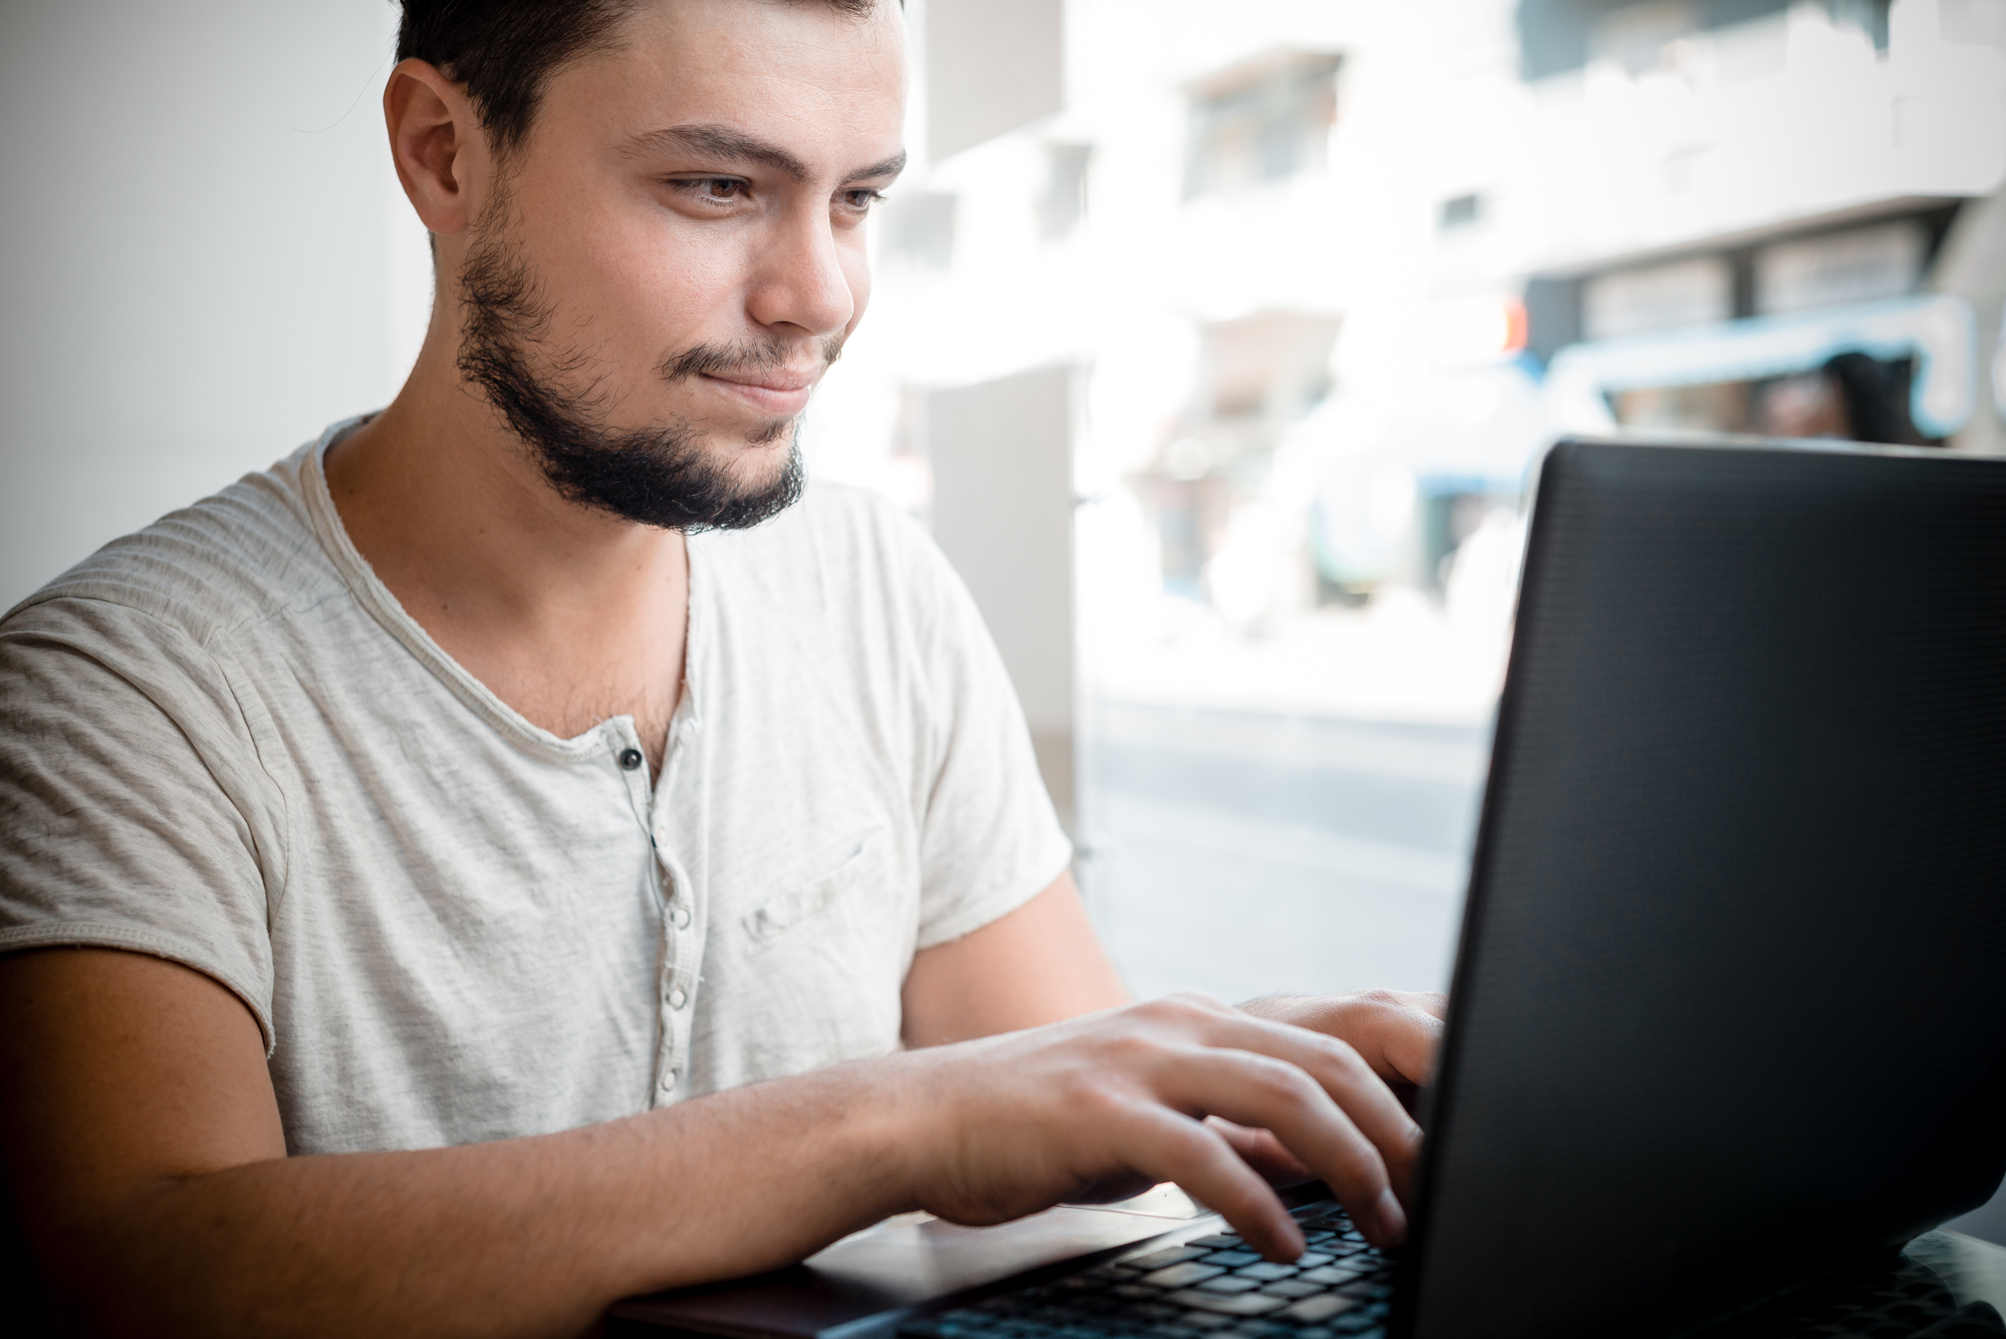 Billedet viser en studerende ved en computer.